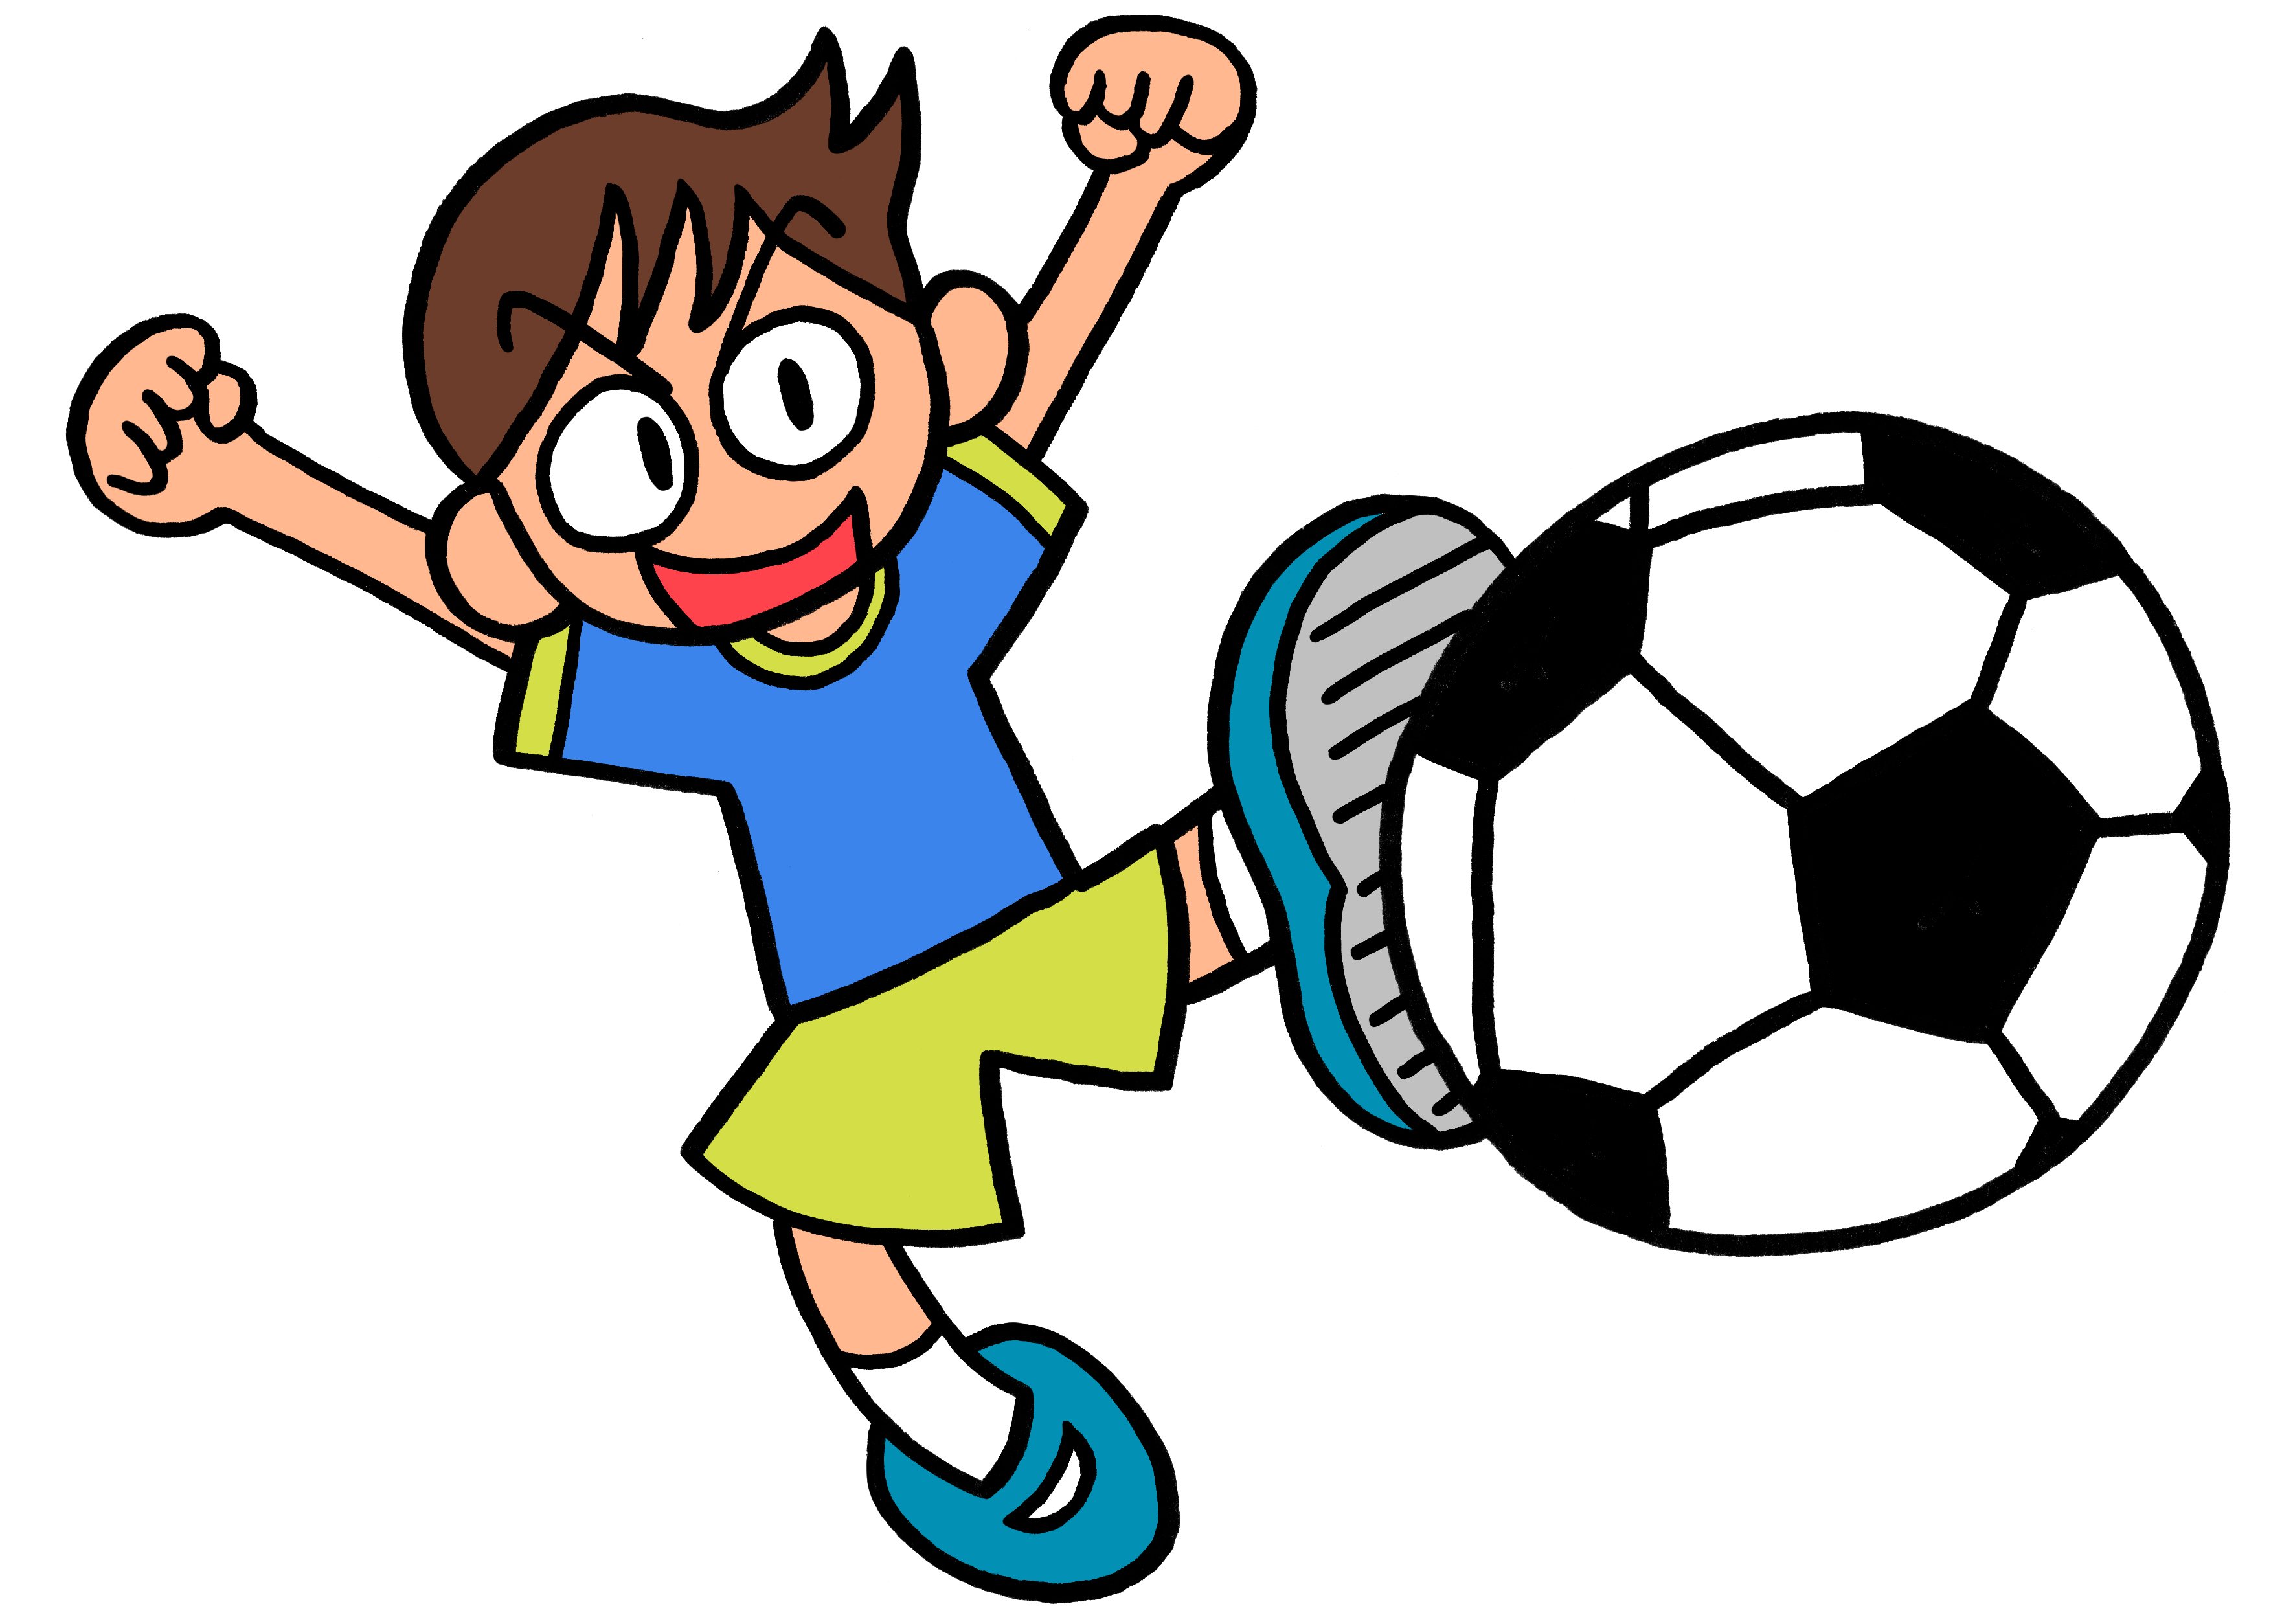 50 サッカー 少年 イラスト イラスト画像検索エンジン